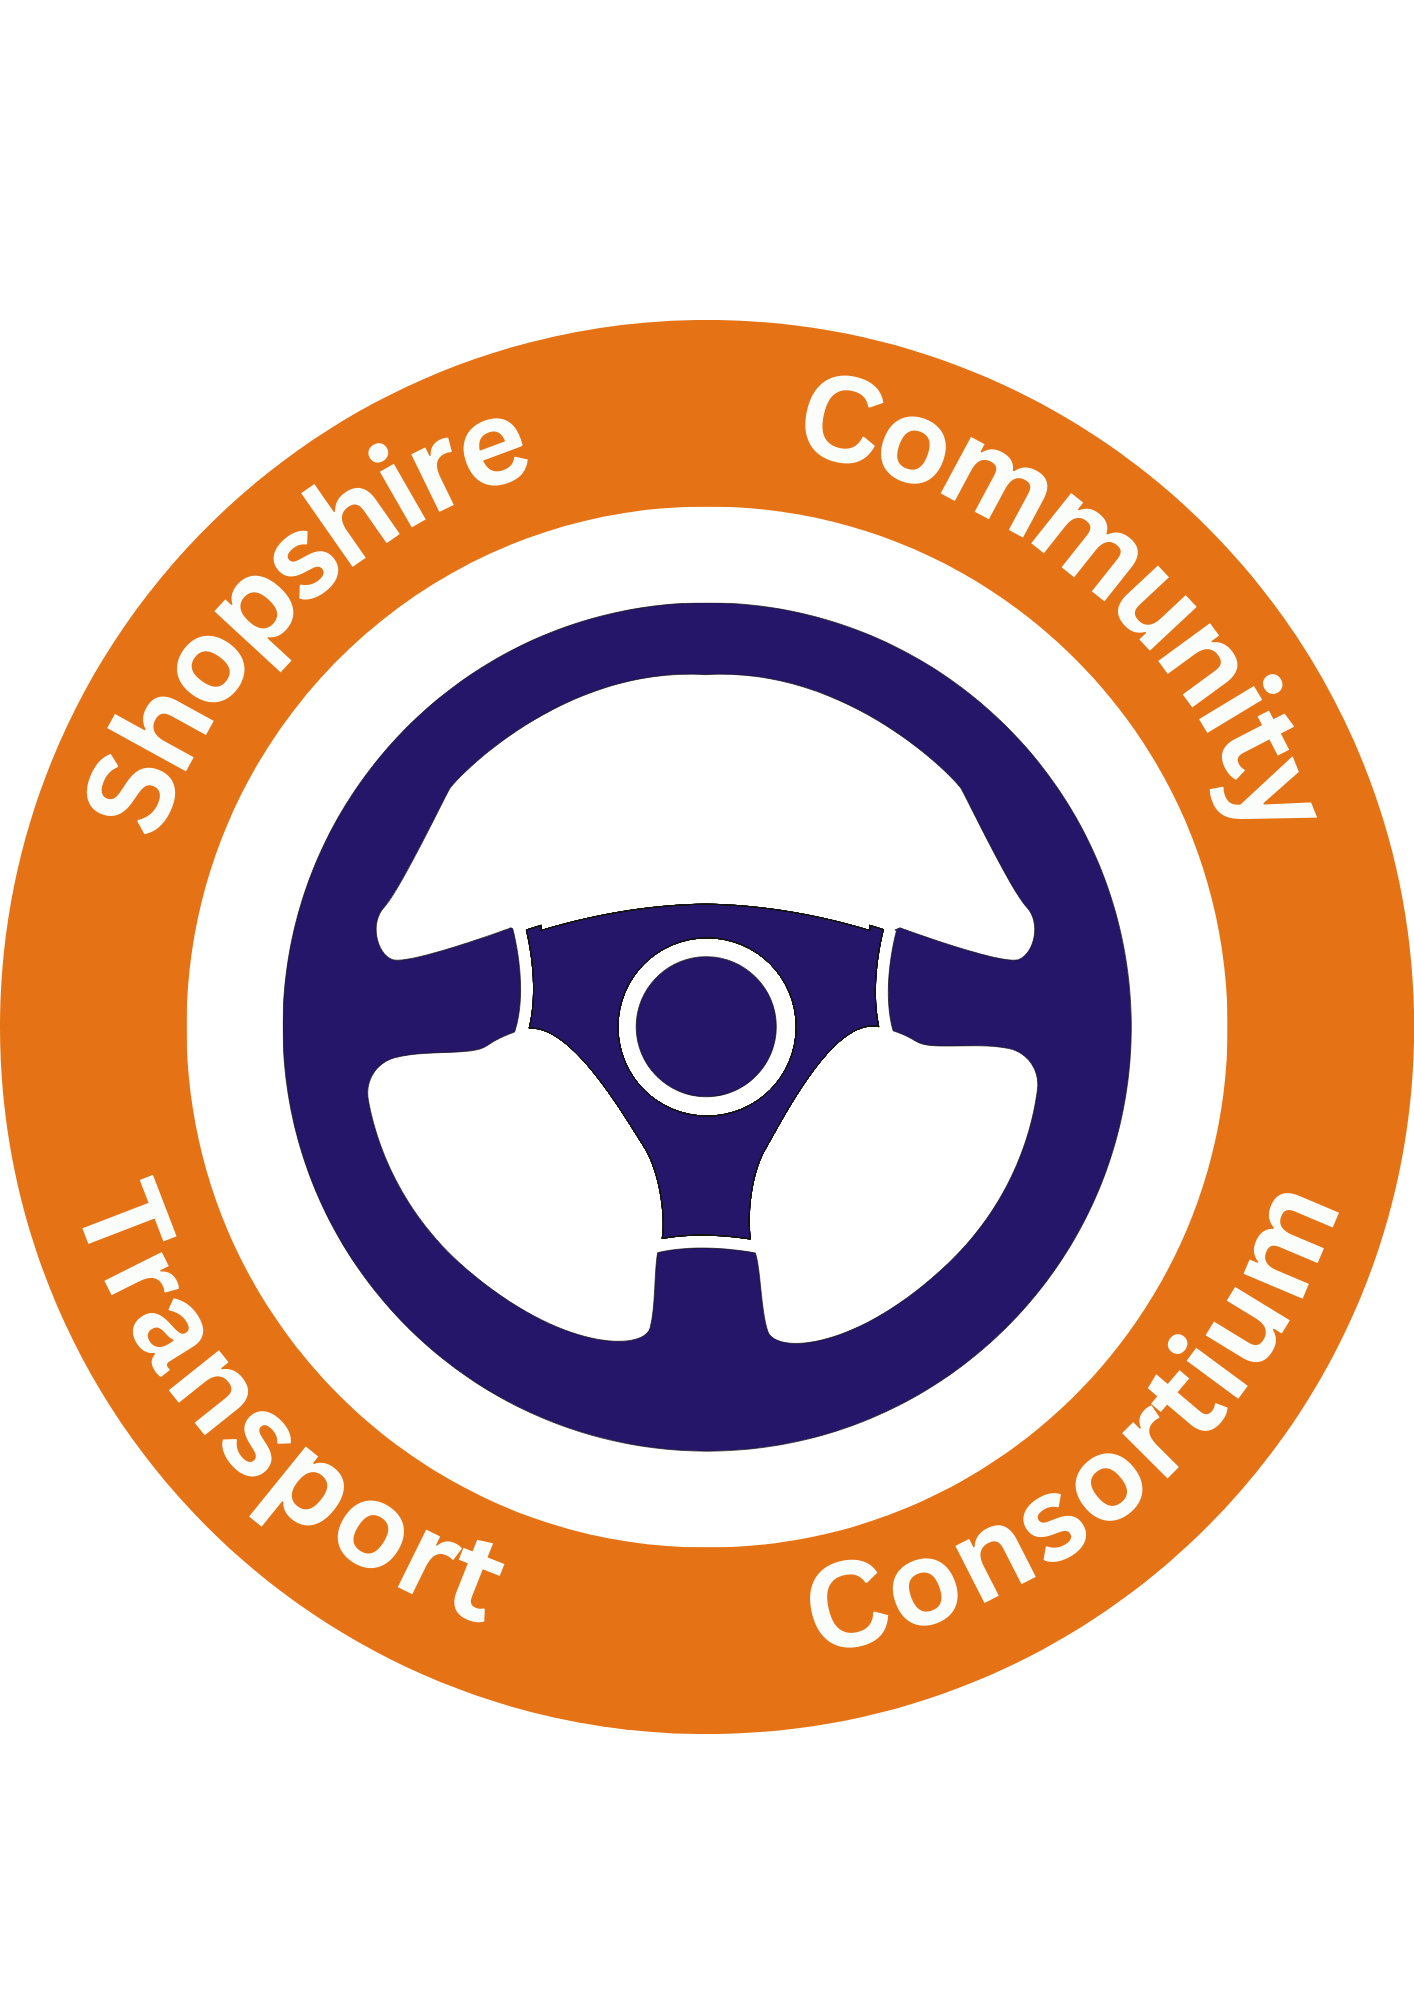 Shropshire Community Transport Consortium